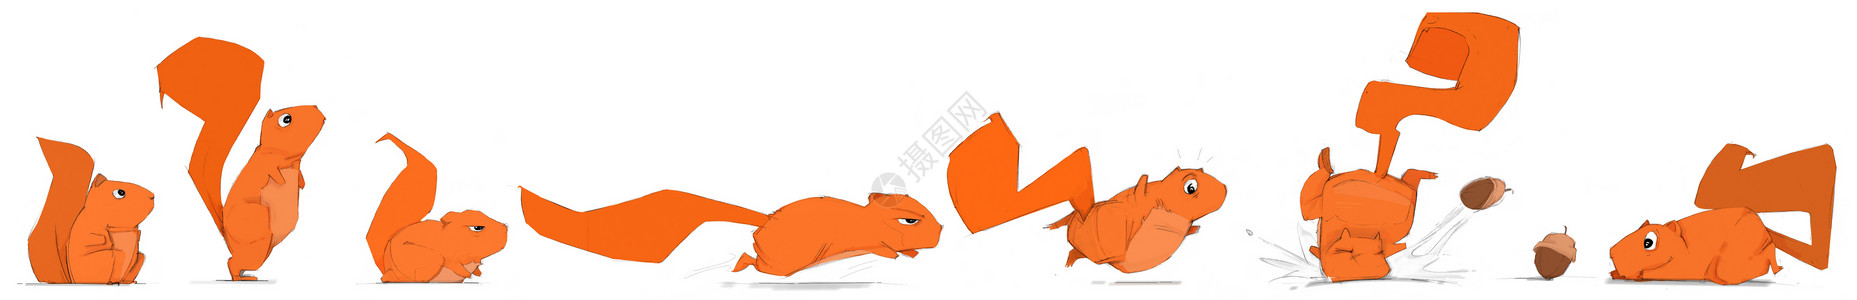 妖精尾巴温蒂有趣的松鼠手画作红色妖精宠物橡子毛皮绘画哺乳动物艺术动物动画片背景